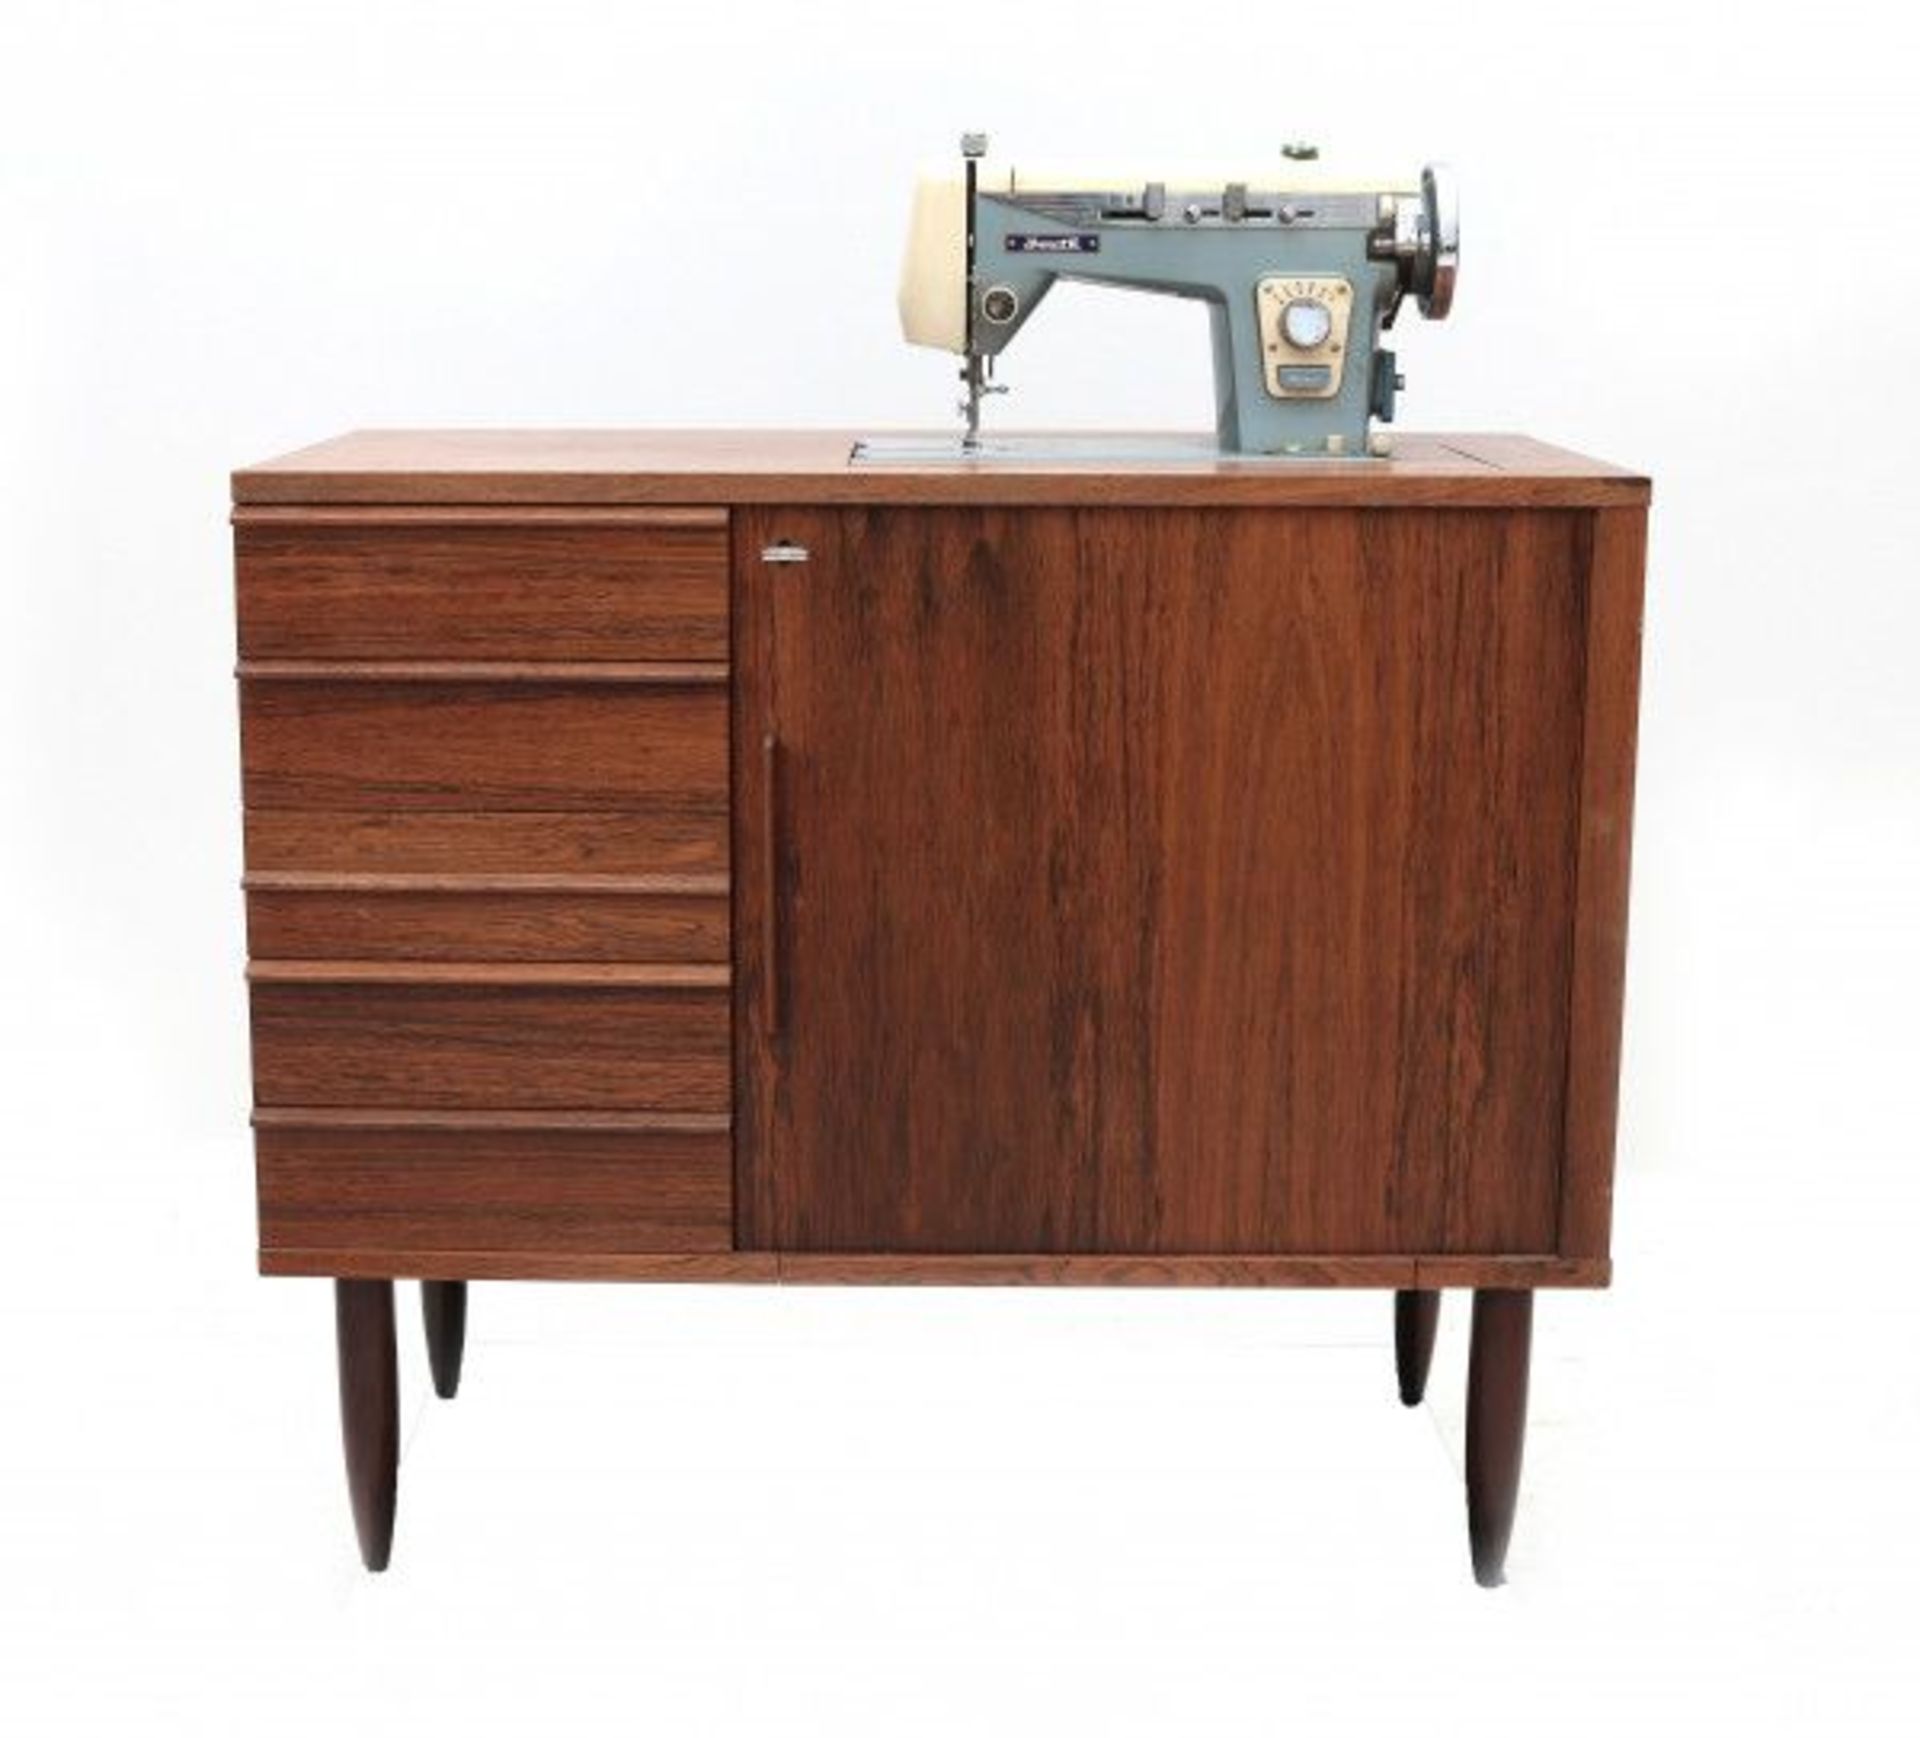 Midcentury ModernA teak veneered sewing sideboard with sliding door and drawers, the sideboard